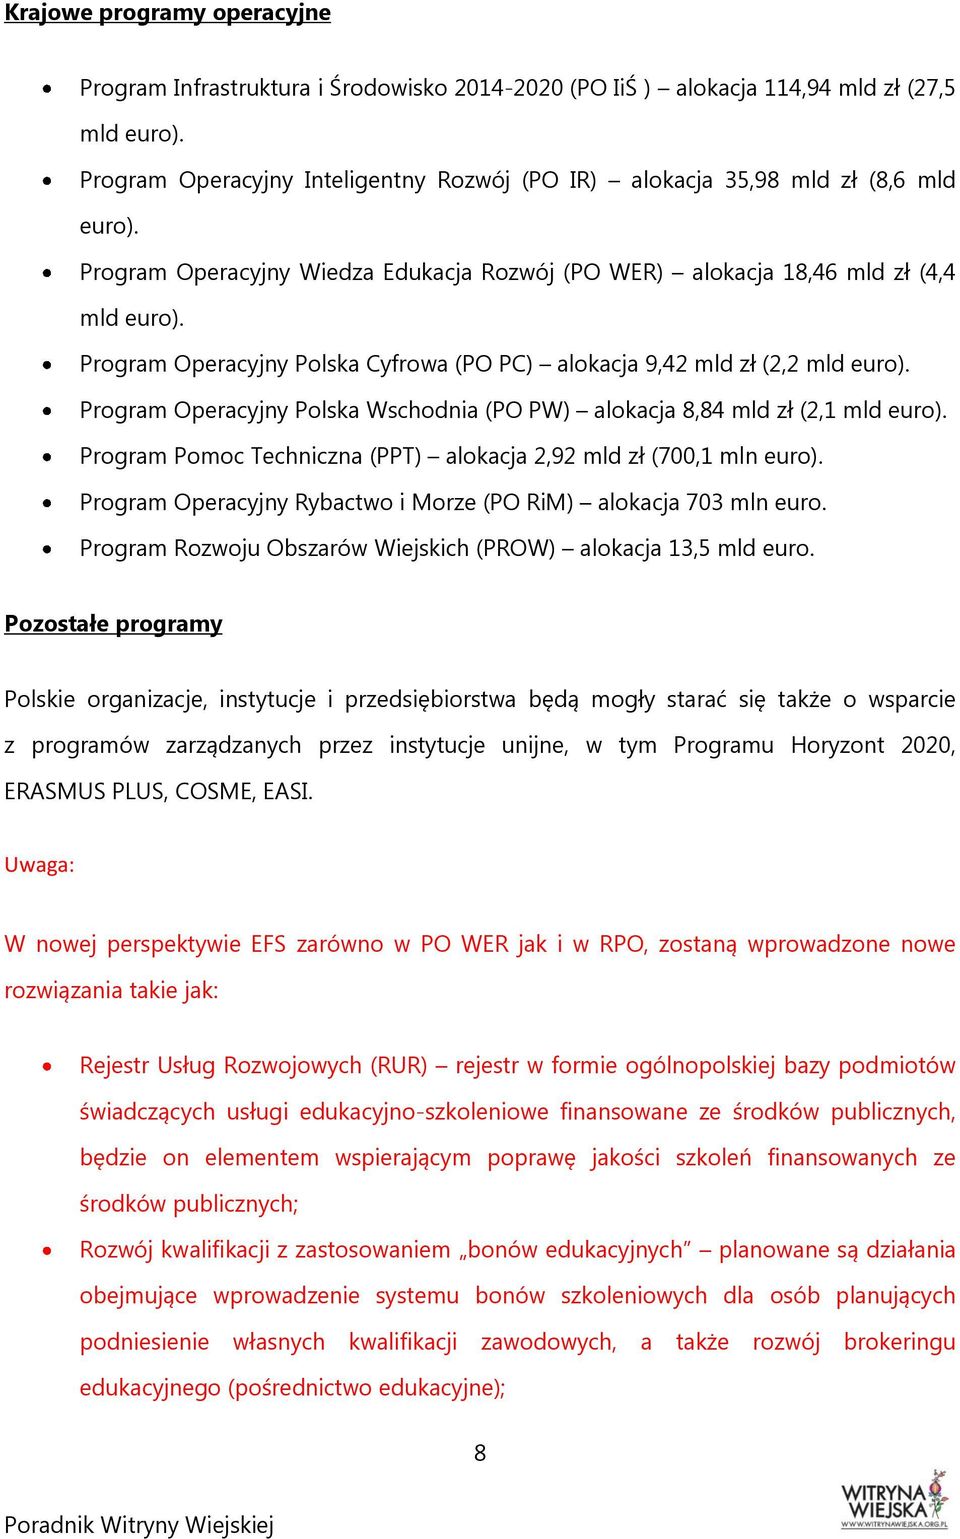 Program Operacyjny Polska Cyfrowa (PO PC) alokacja 9,42 mld zł (2,2 mld euro). Program Operacyjny Polska Wschodnia (PO PW) alokacja 8,84 mld zł (2,1 mld euro).